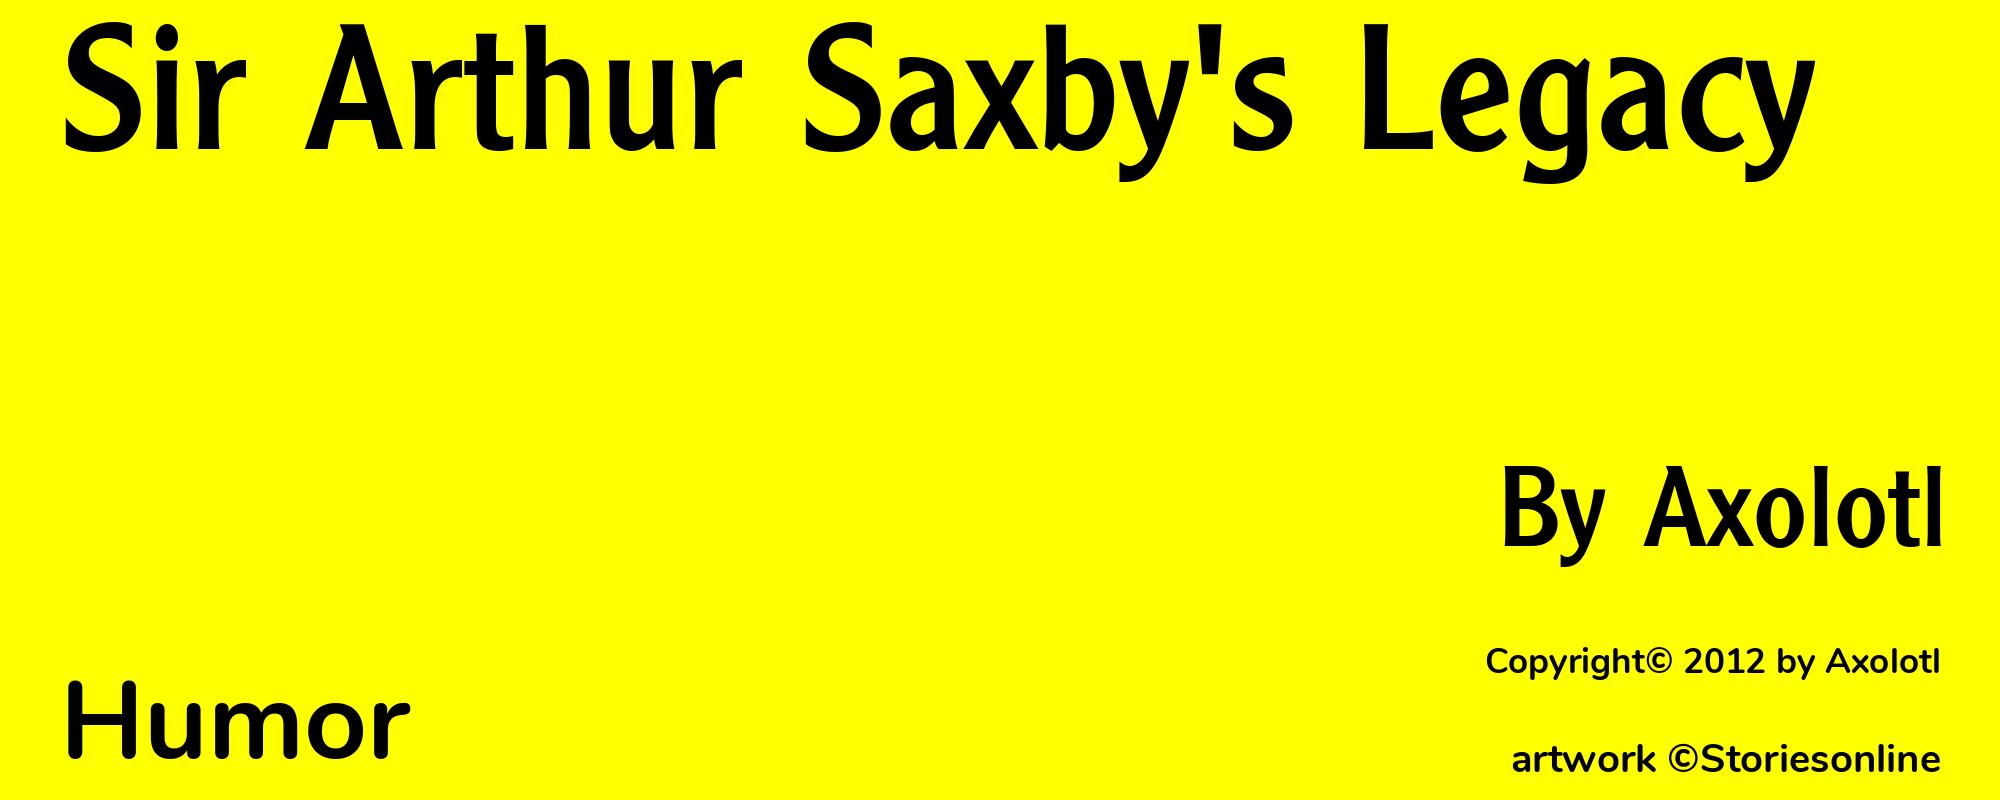 Sir Arthur Saxby's Legacy - Cover